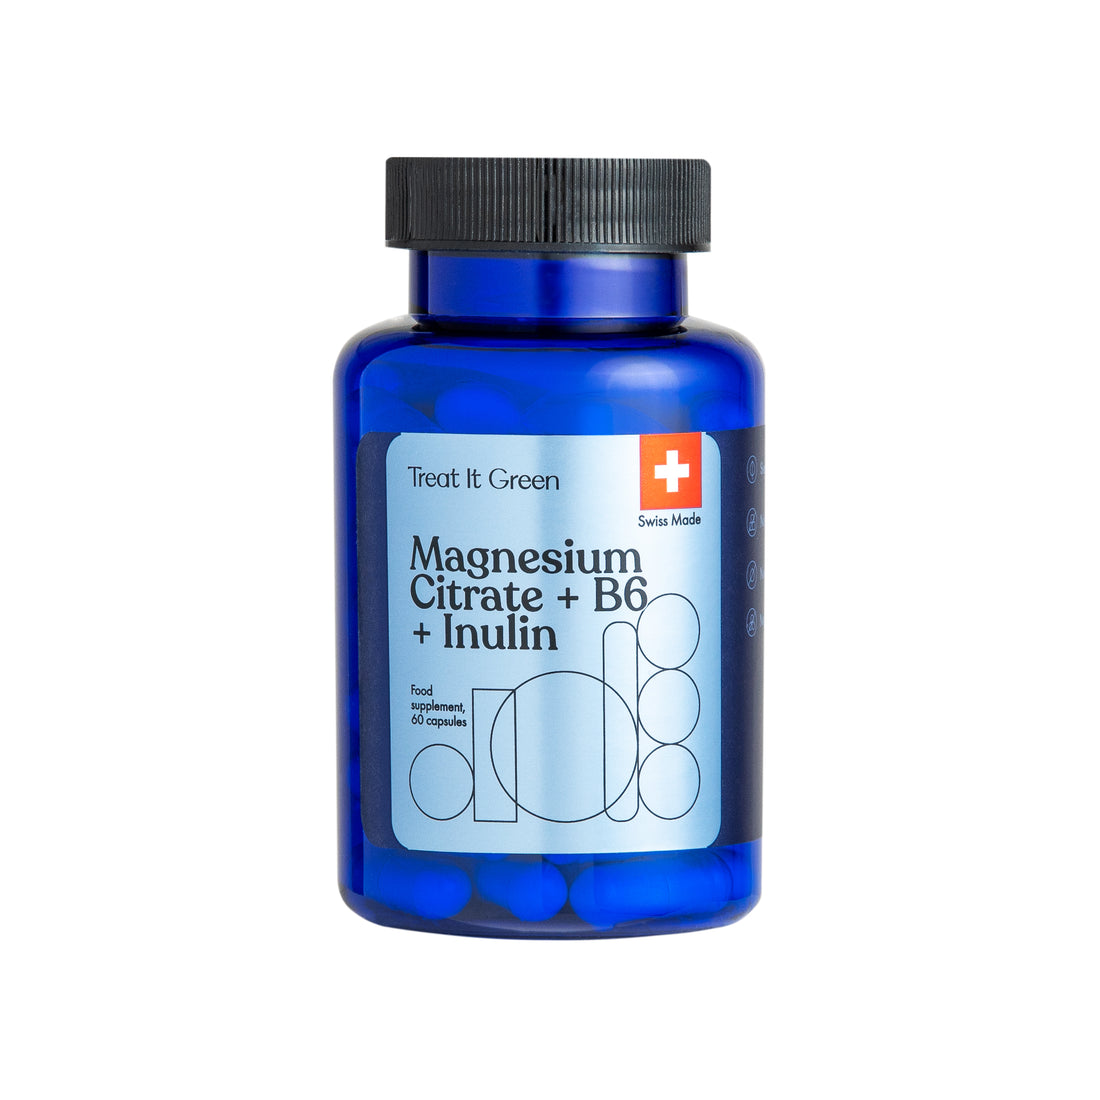 Magnesium citrate + B6 + Inulin (60 caps)